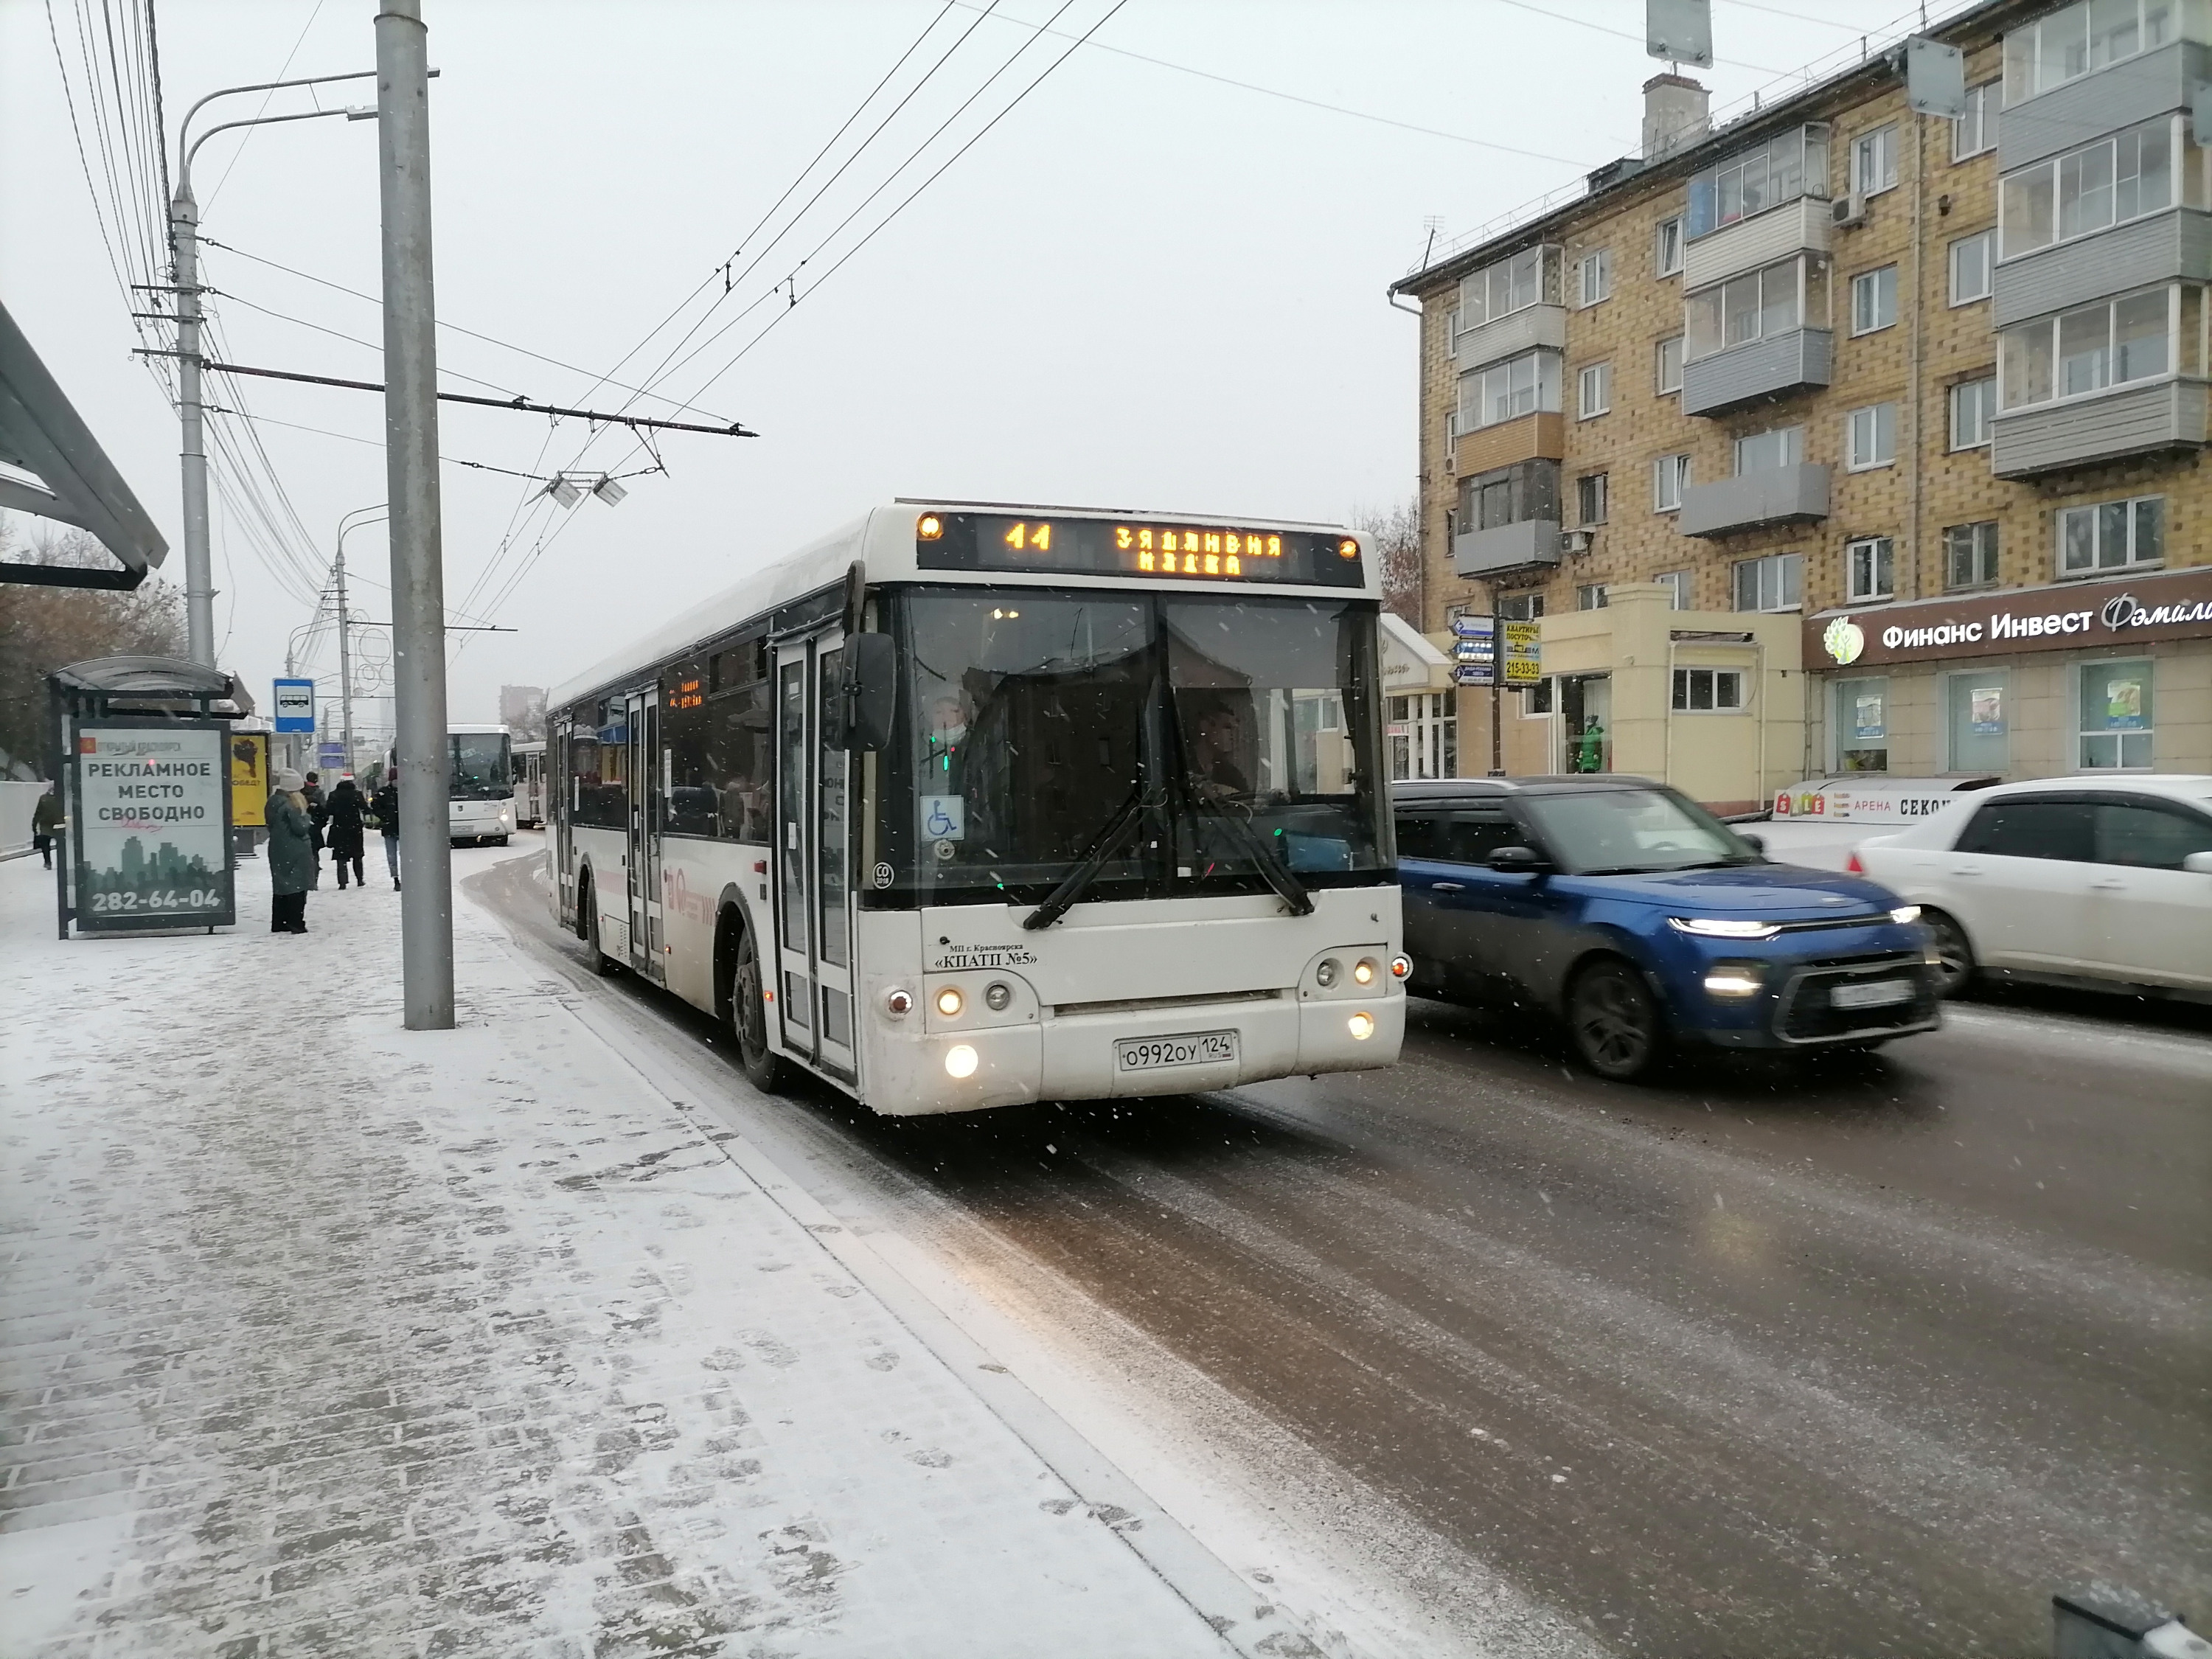 К стадиону «Локомотив» автобус опустел больше, чем наполовину